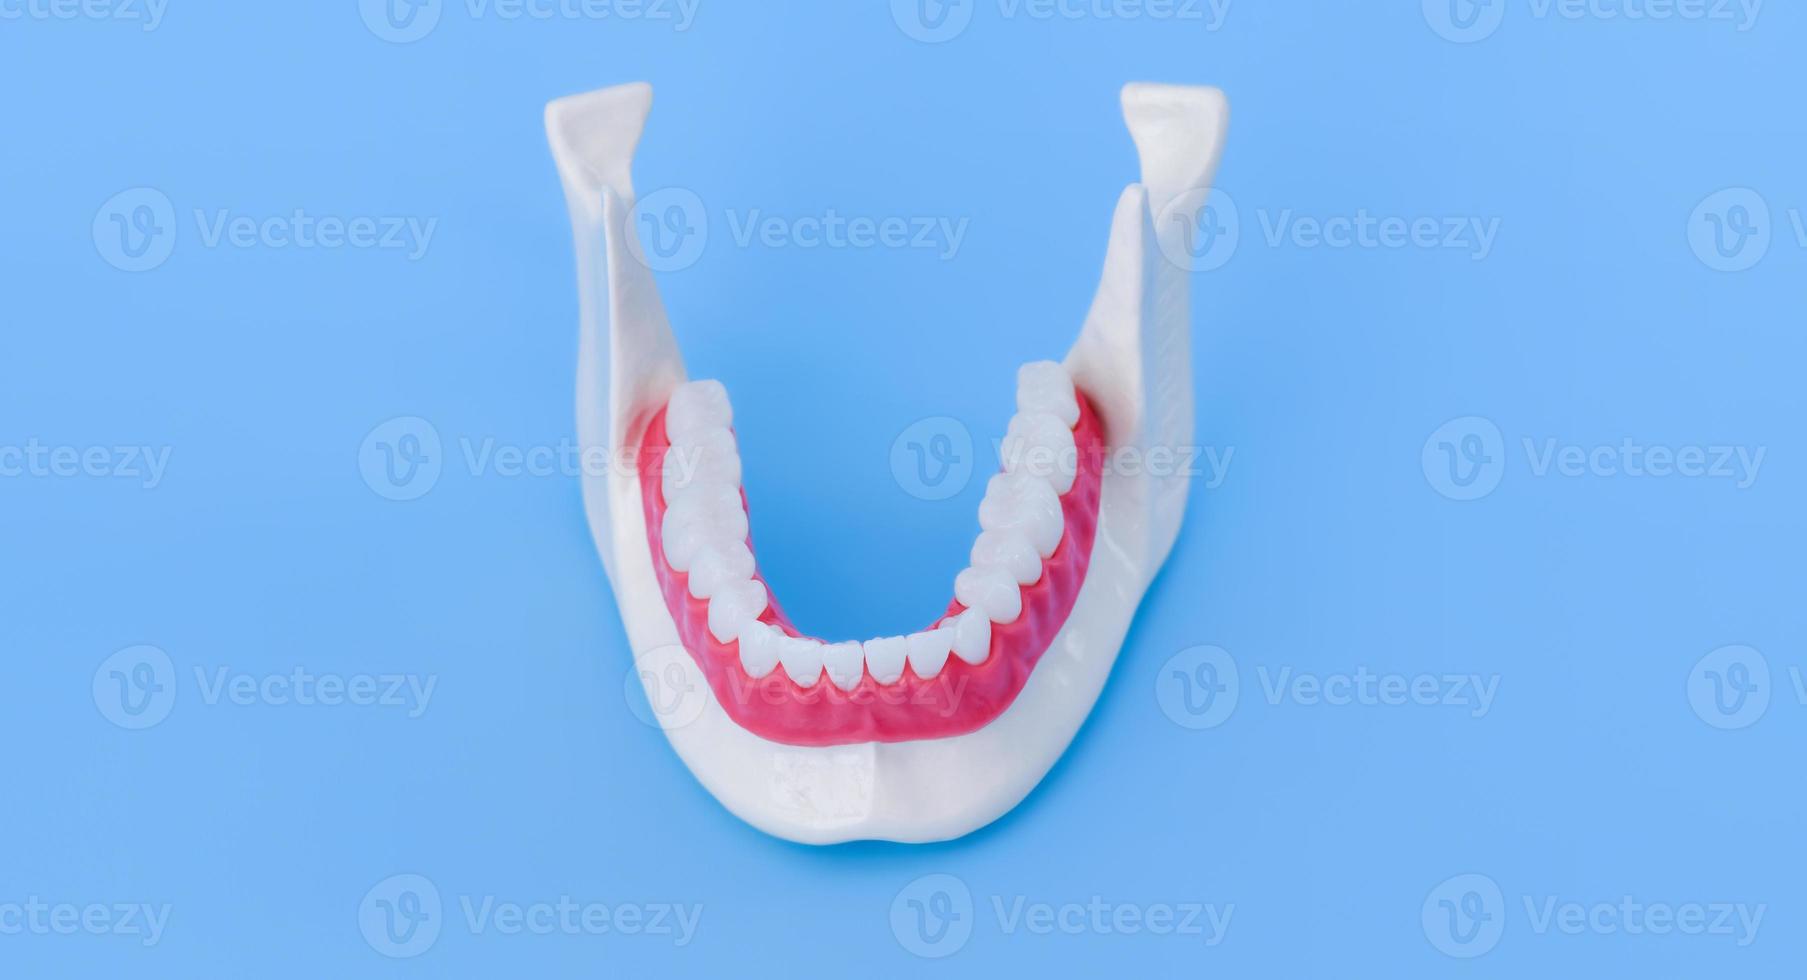 mâchoire humaine inférieure avec modèle d'anatomie des dents et des gencives photo